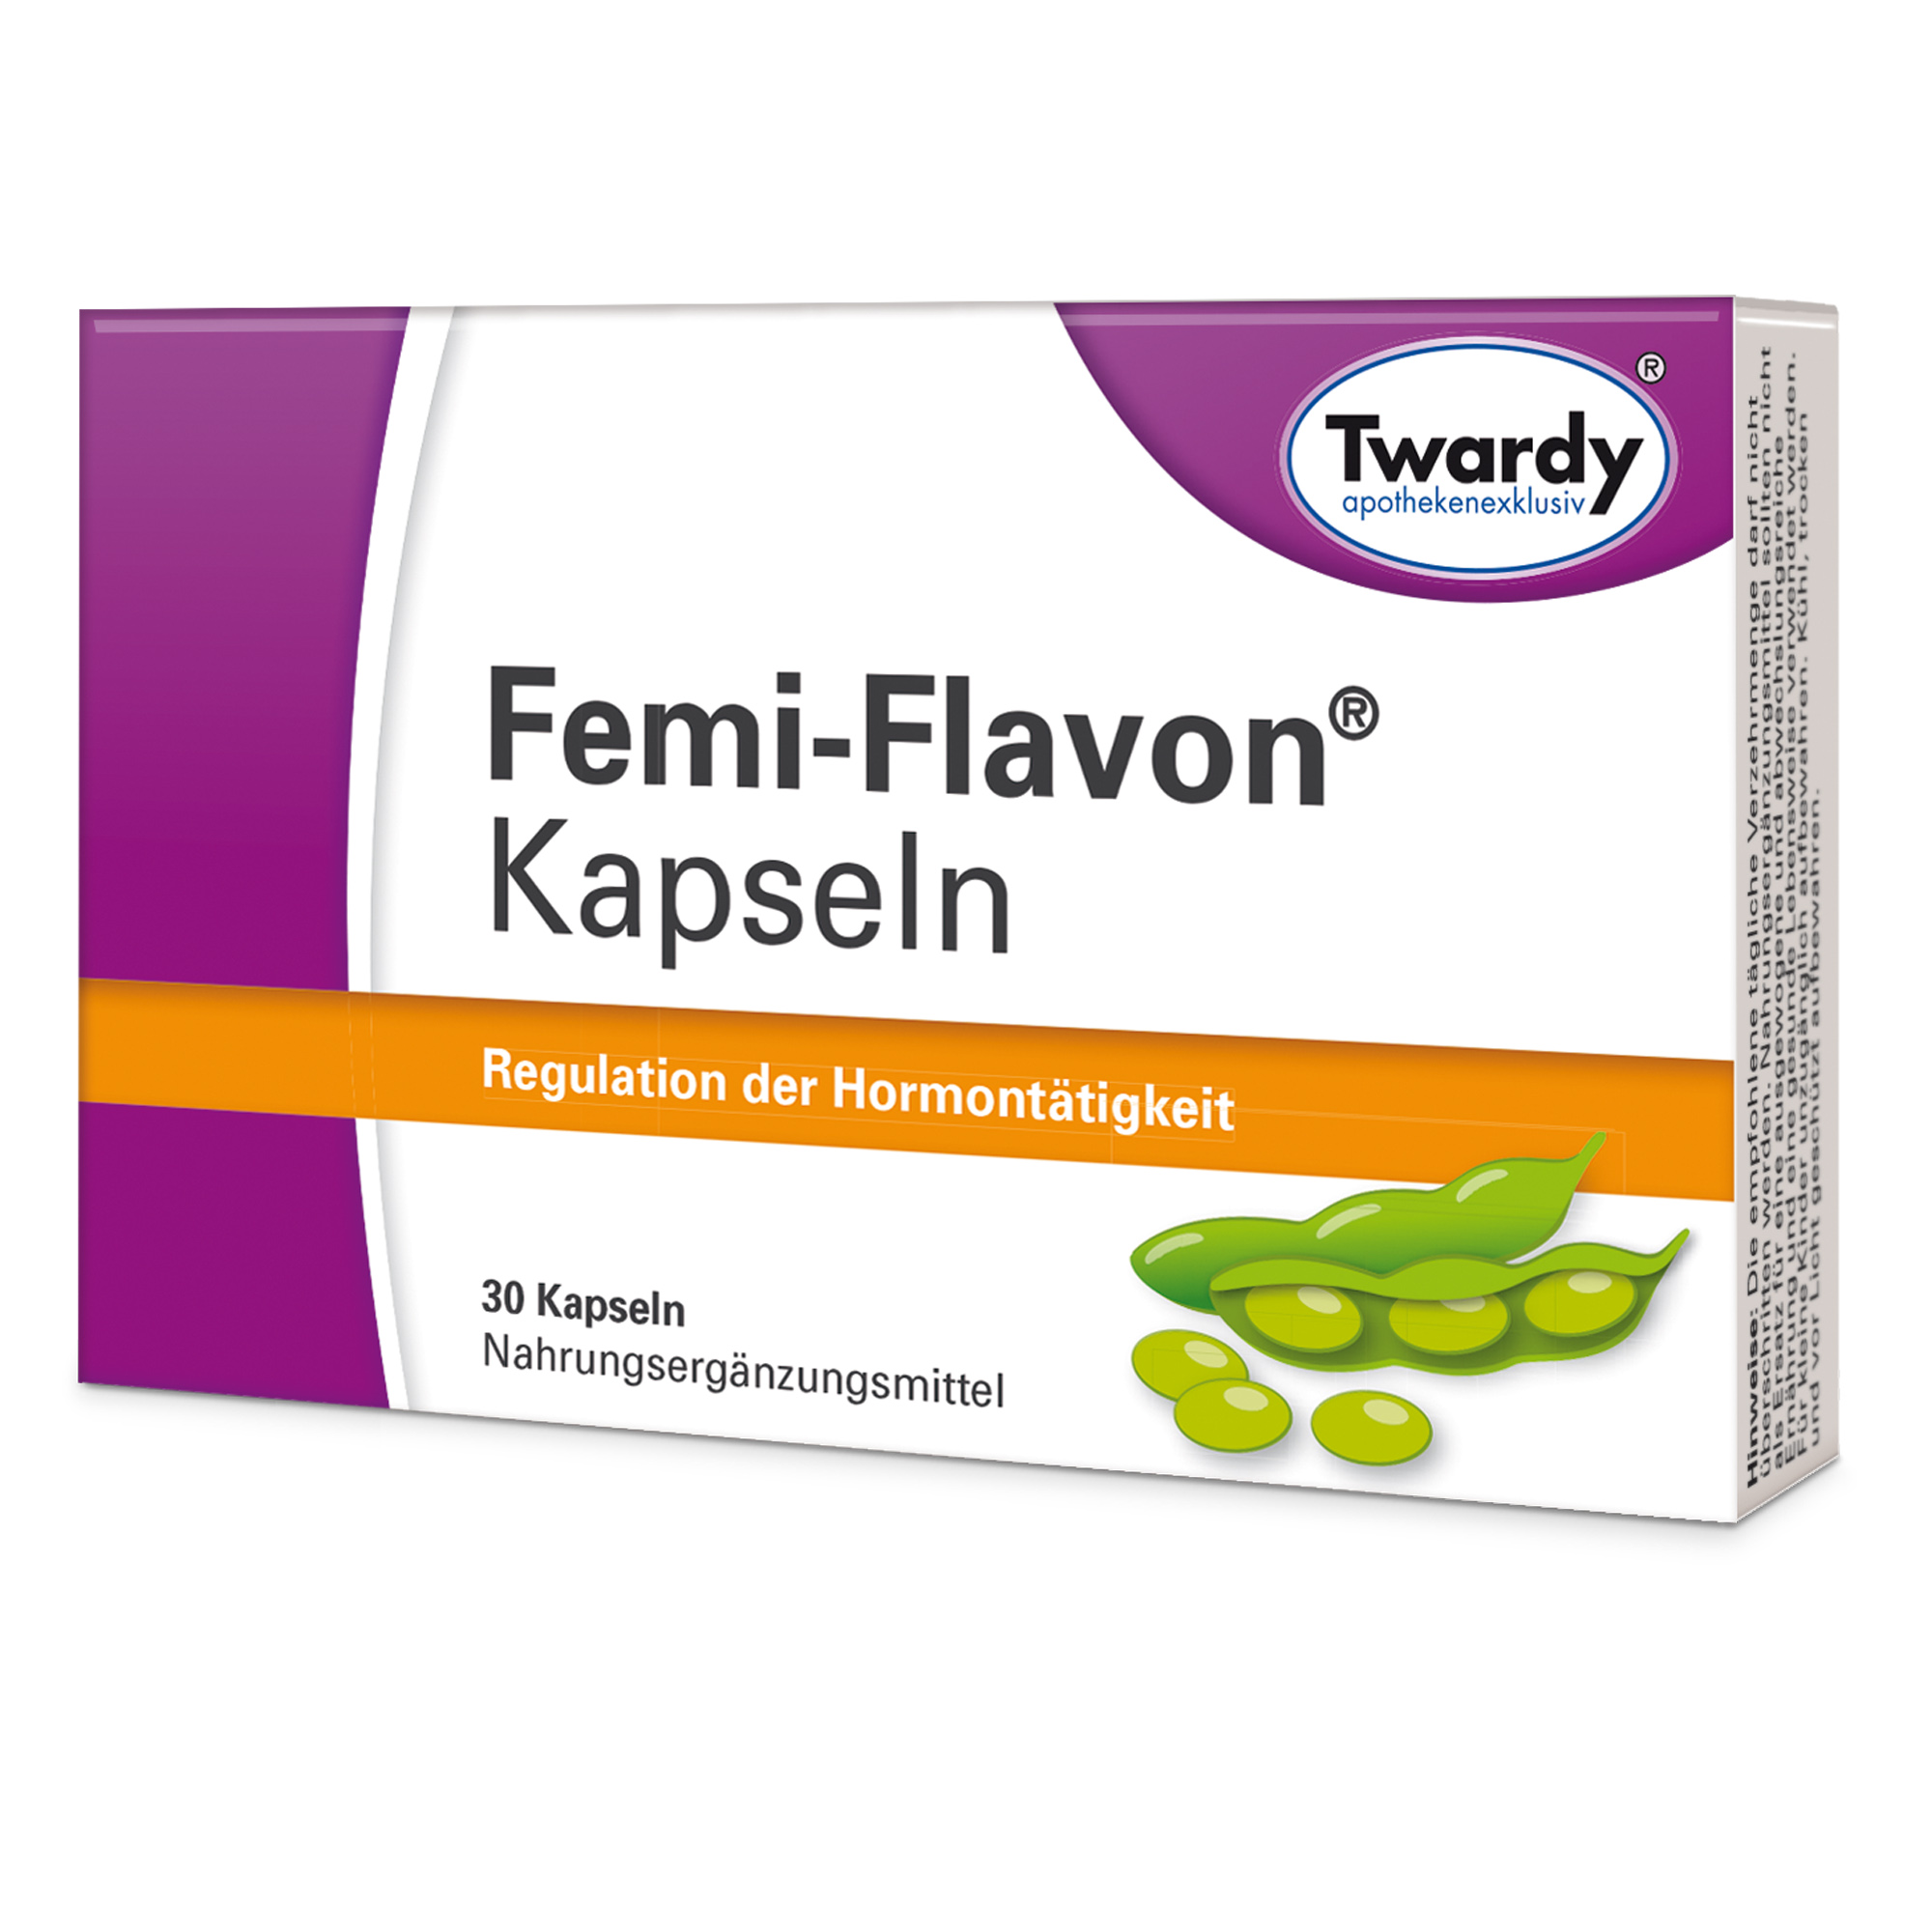 Femi-Flavon® Kapseln – PZN 13888814